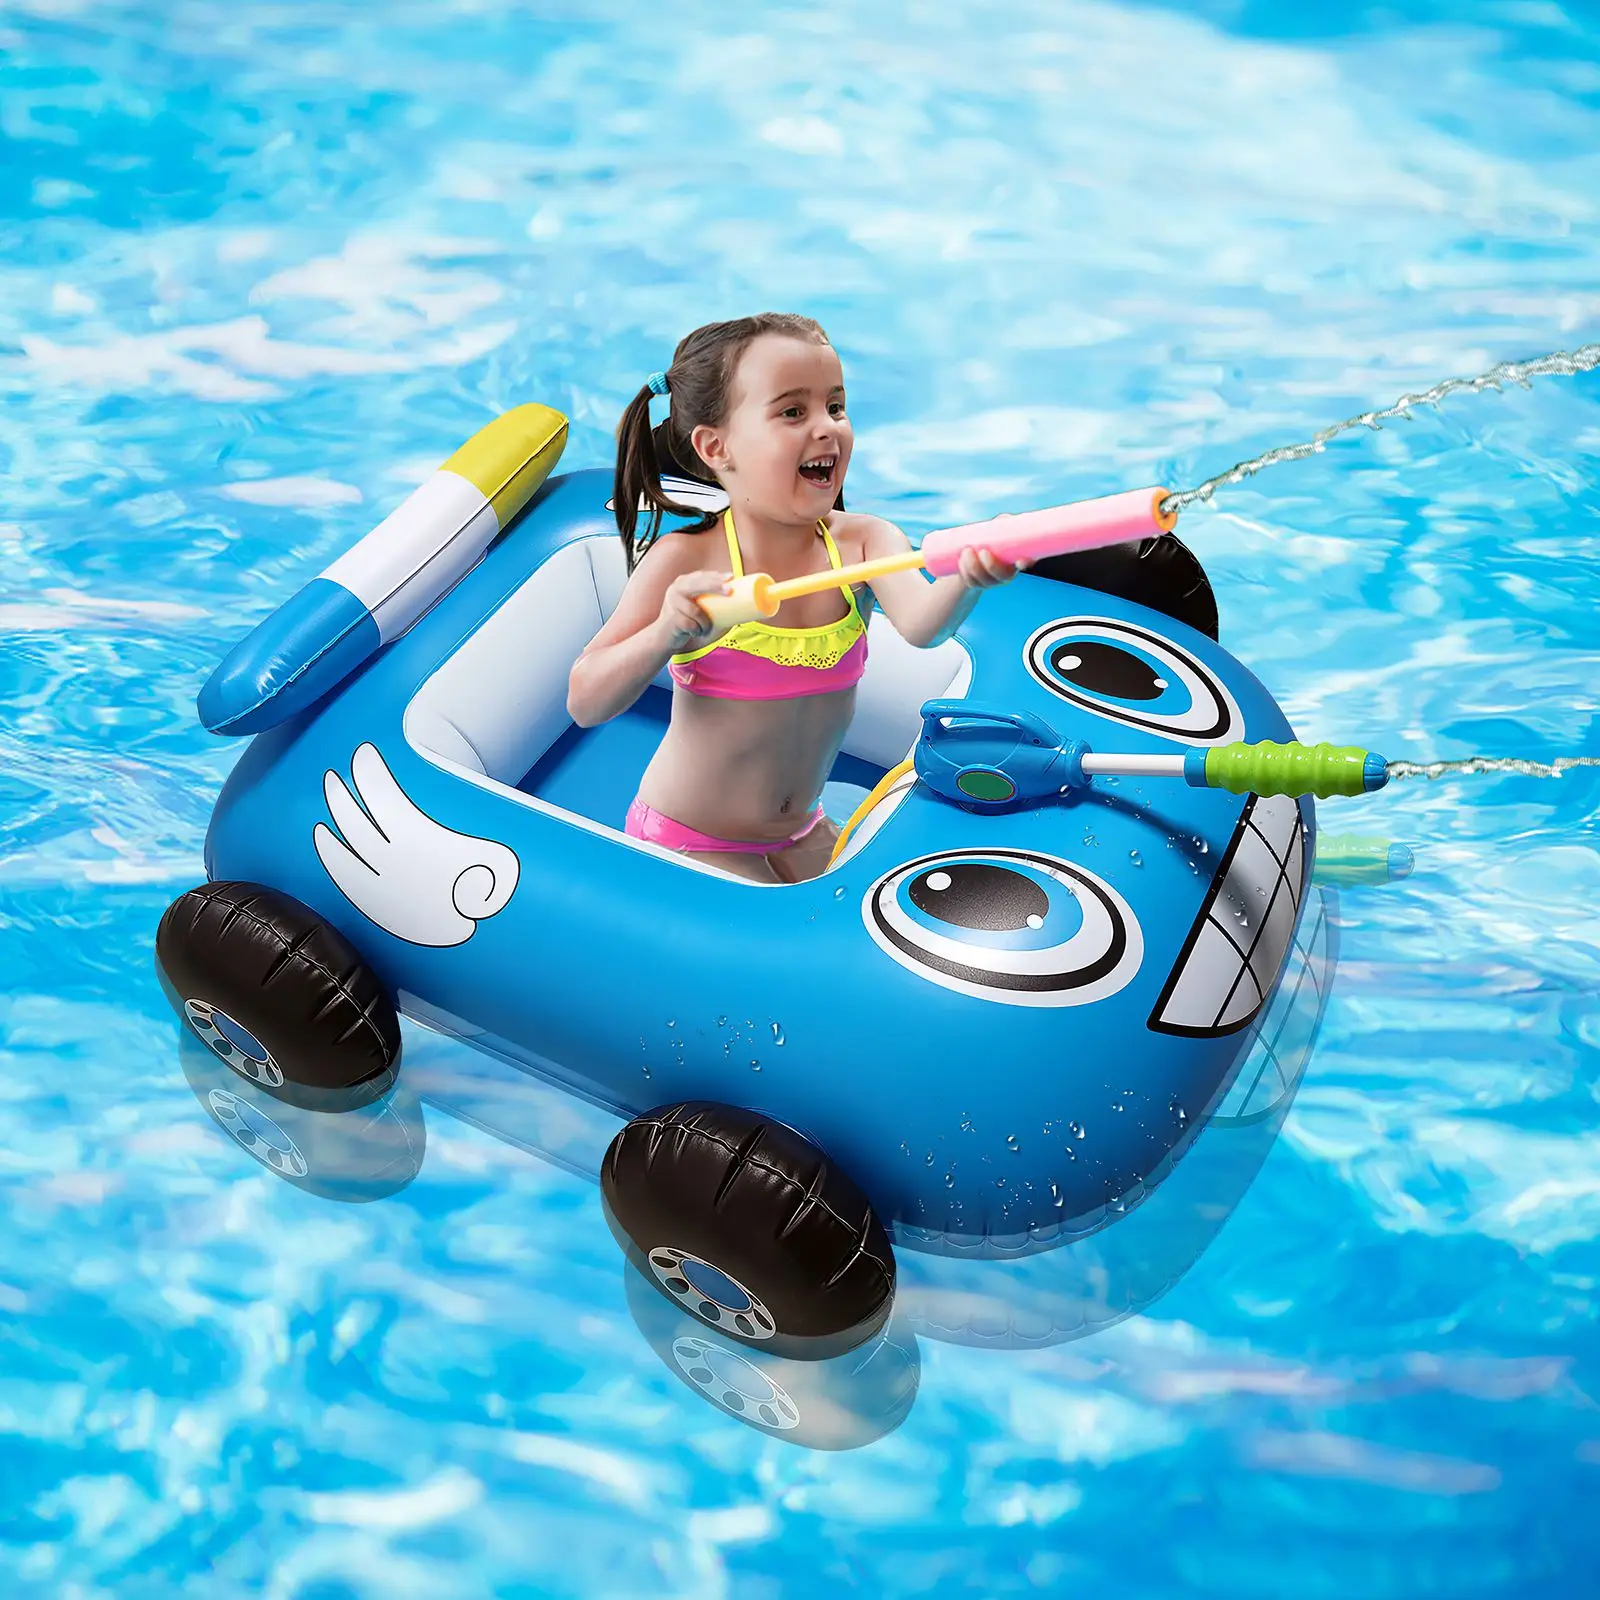 

Надувная лодка для бассейна, детский поплавок со встроенным водяным пистолетом, красочные принты и модные узоры для детей